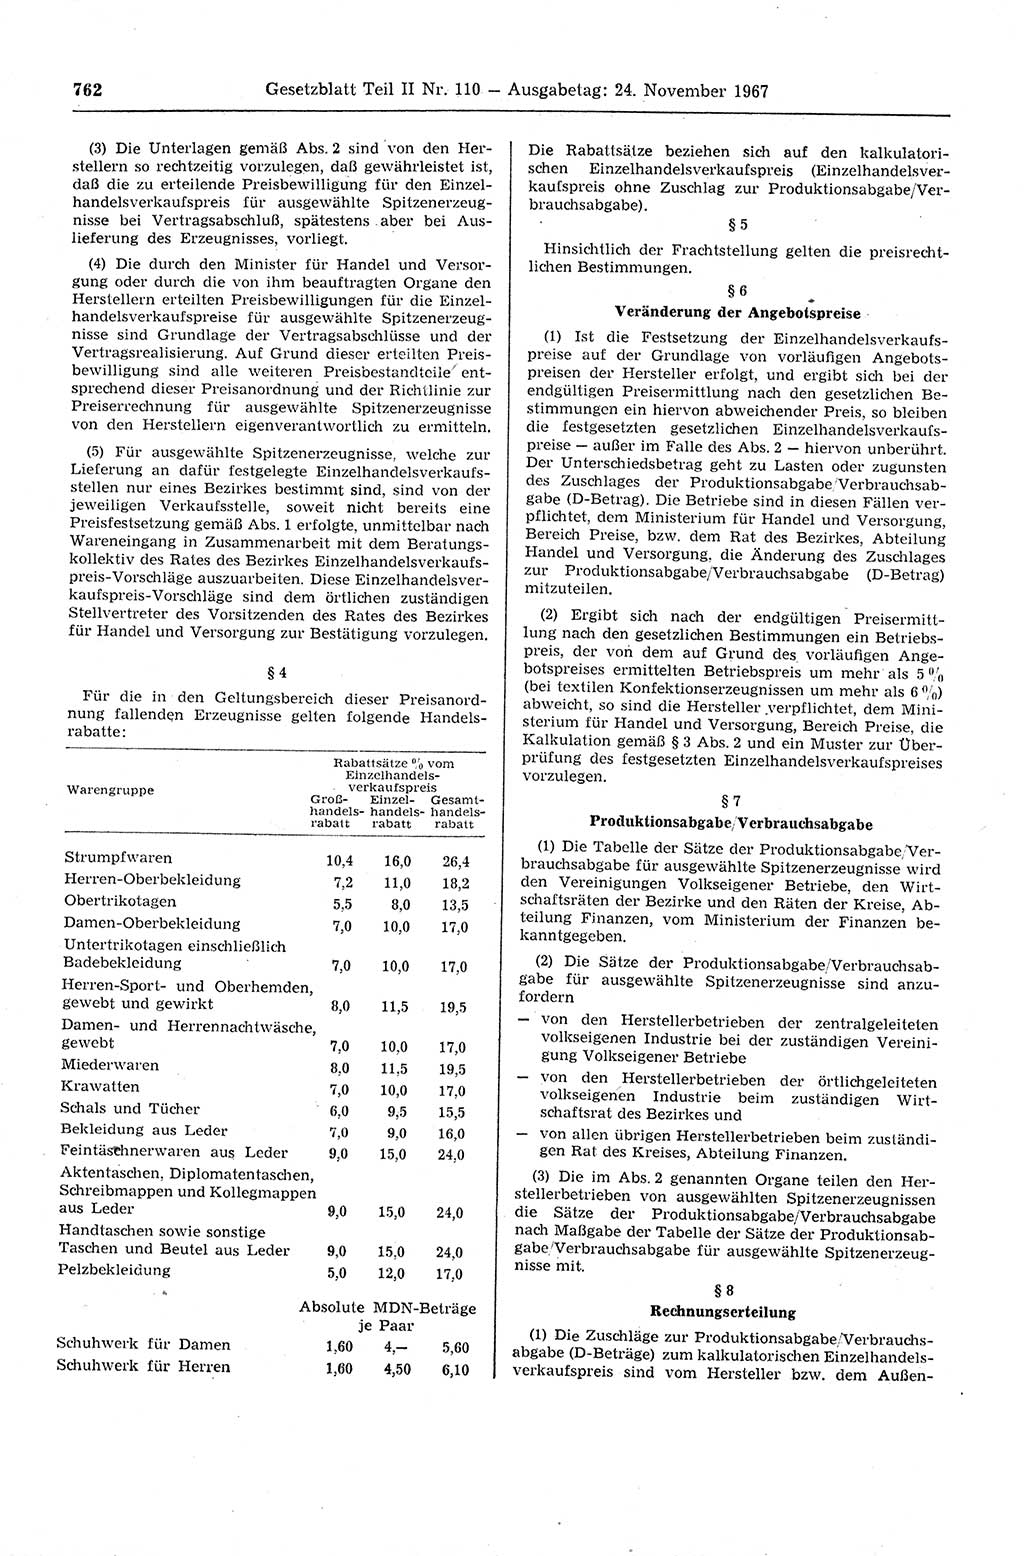 Gesetzblatt (GBl.) der Deutschen Demokratischen Republik (DDR) Teil ⅠⅠ 1967, Seite 762 (GBl. DDR ⅠⅠ 1967, S. 762)